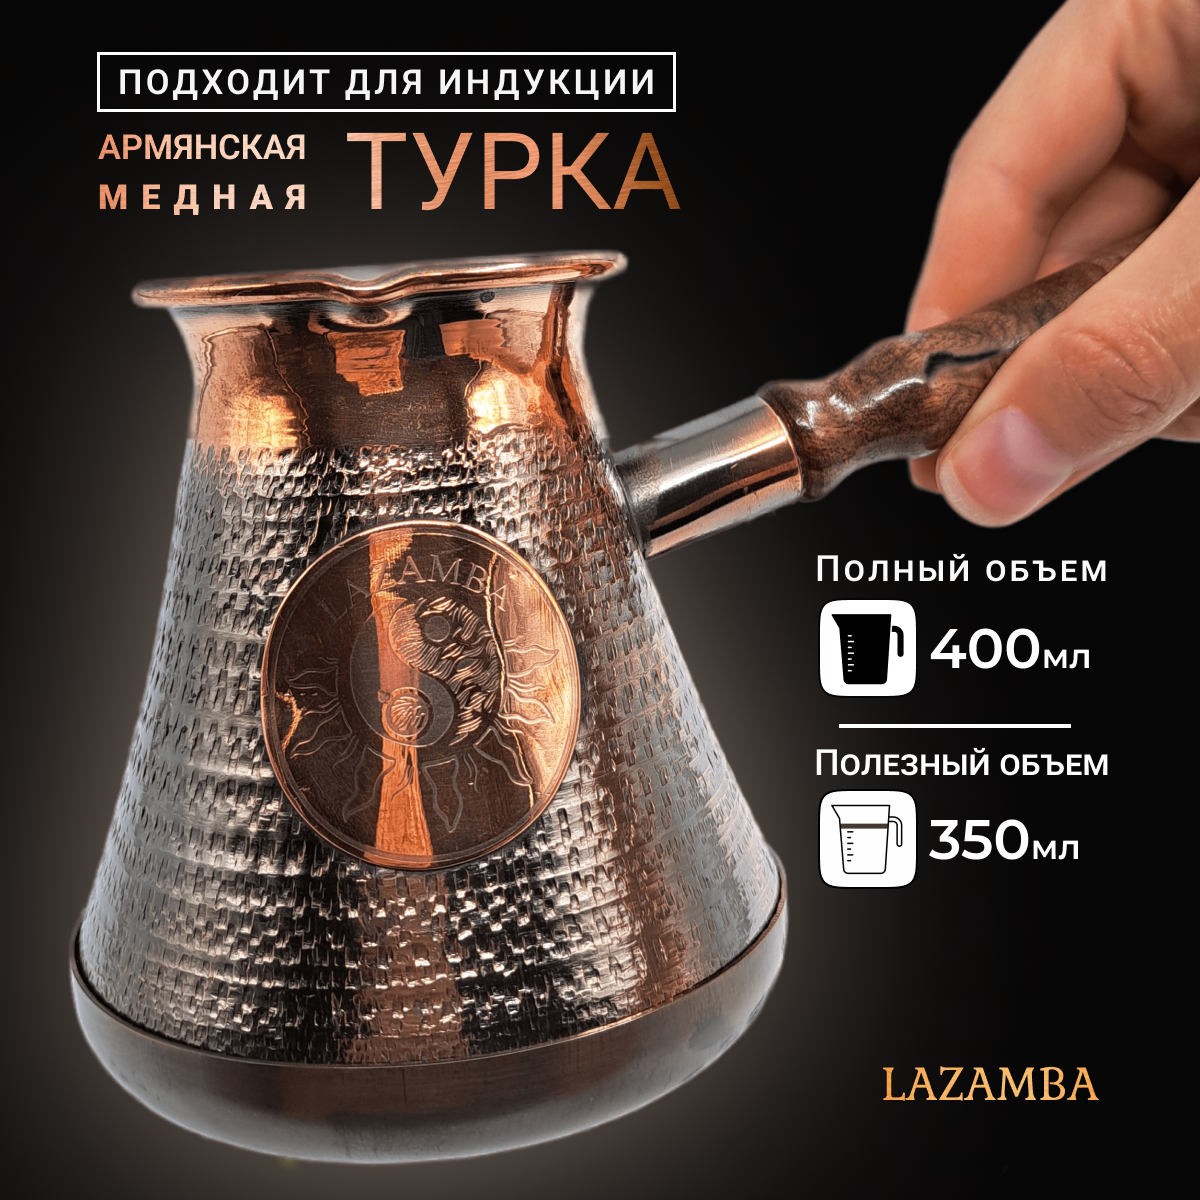 Индукционная турка для кофе медная армянская 04л цельнокатаная турка 400 мл.